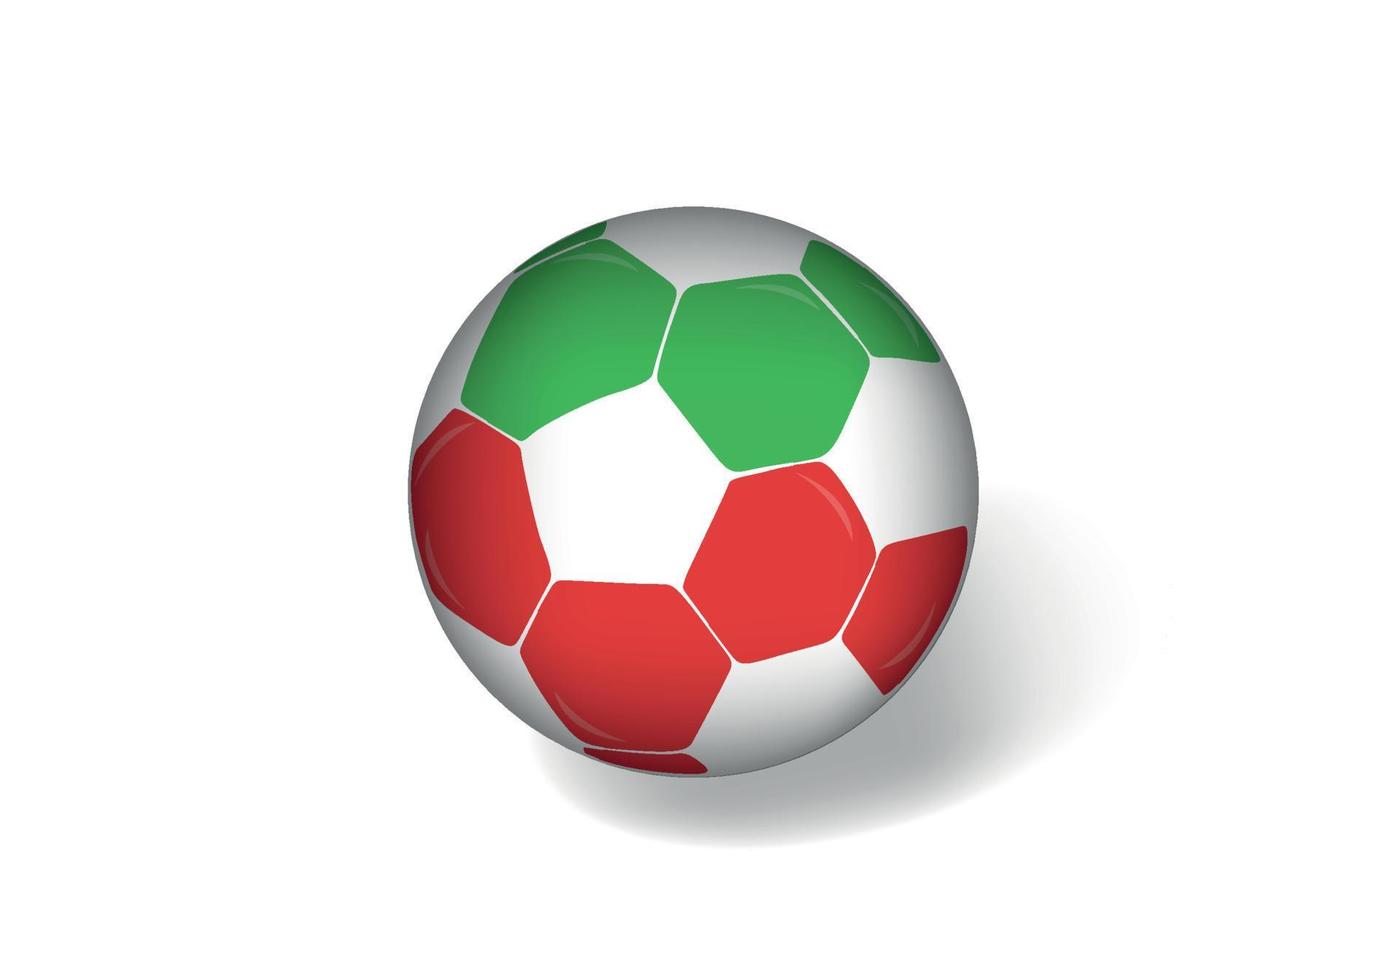 bola de futebol de bandeira da Bulgária de vetor livre. vector design de bola de futebol vermelho, verde e branco grátis.